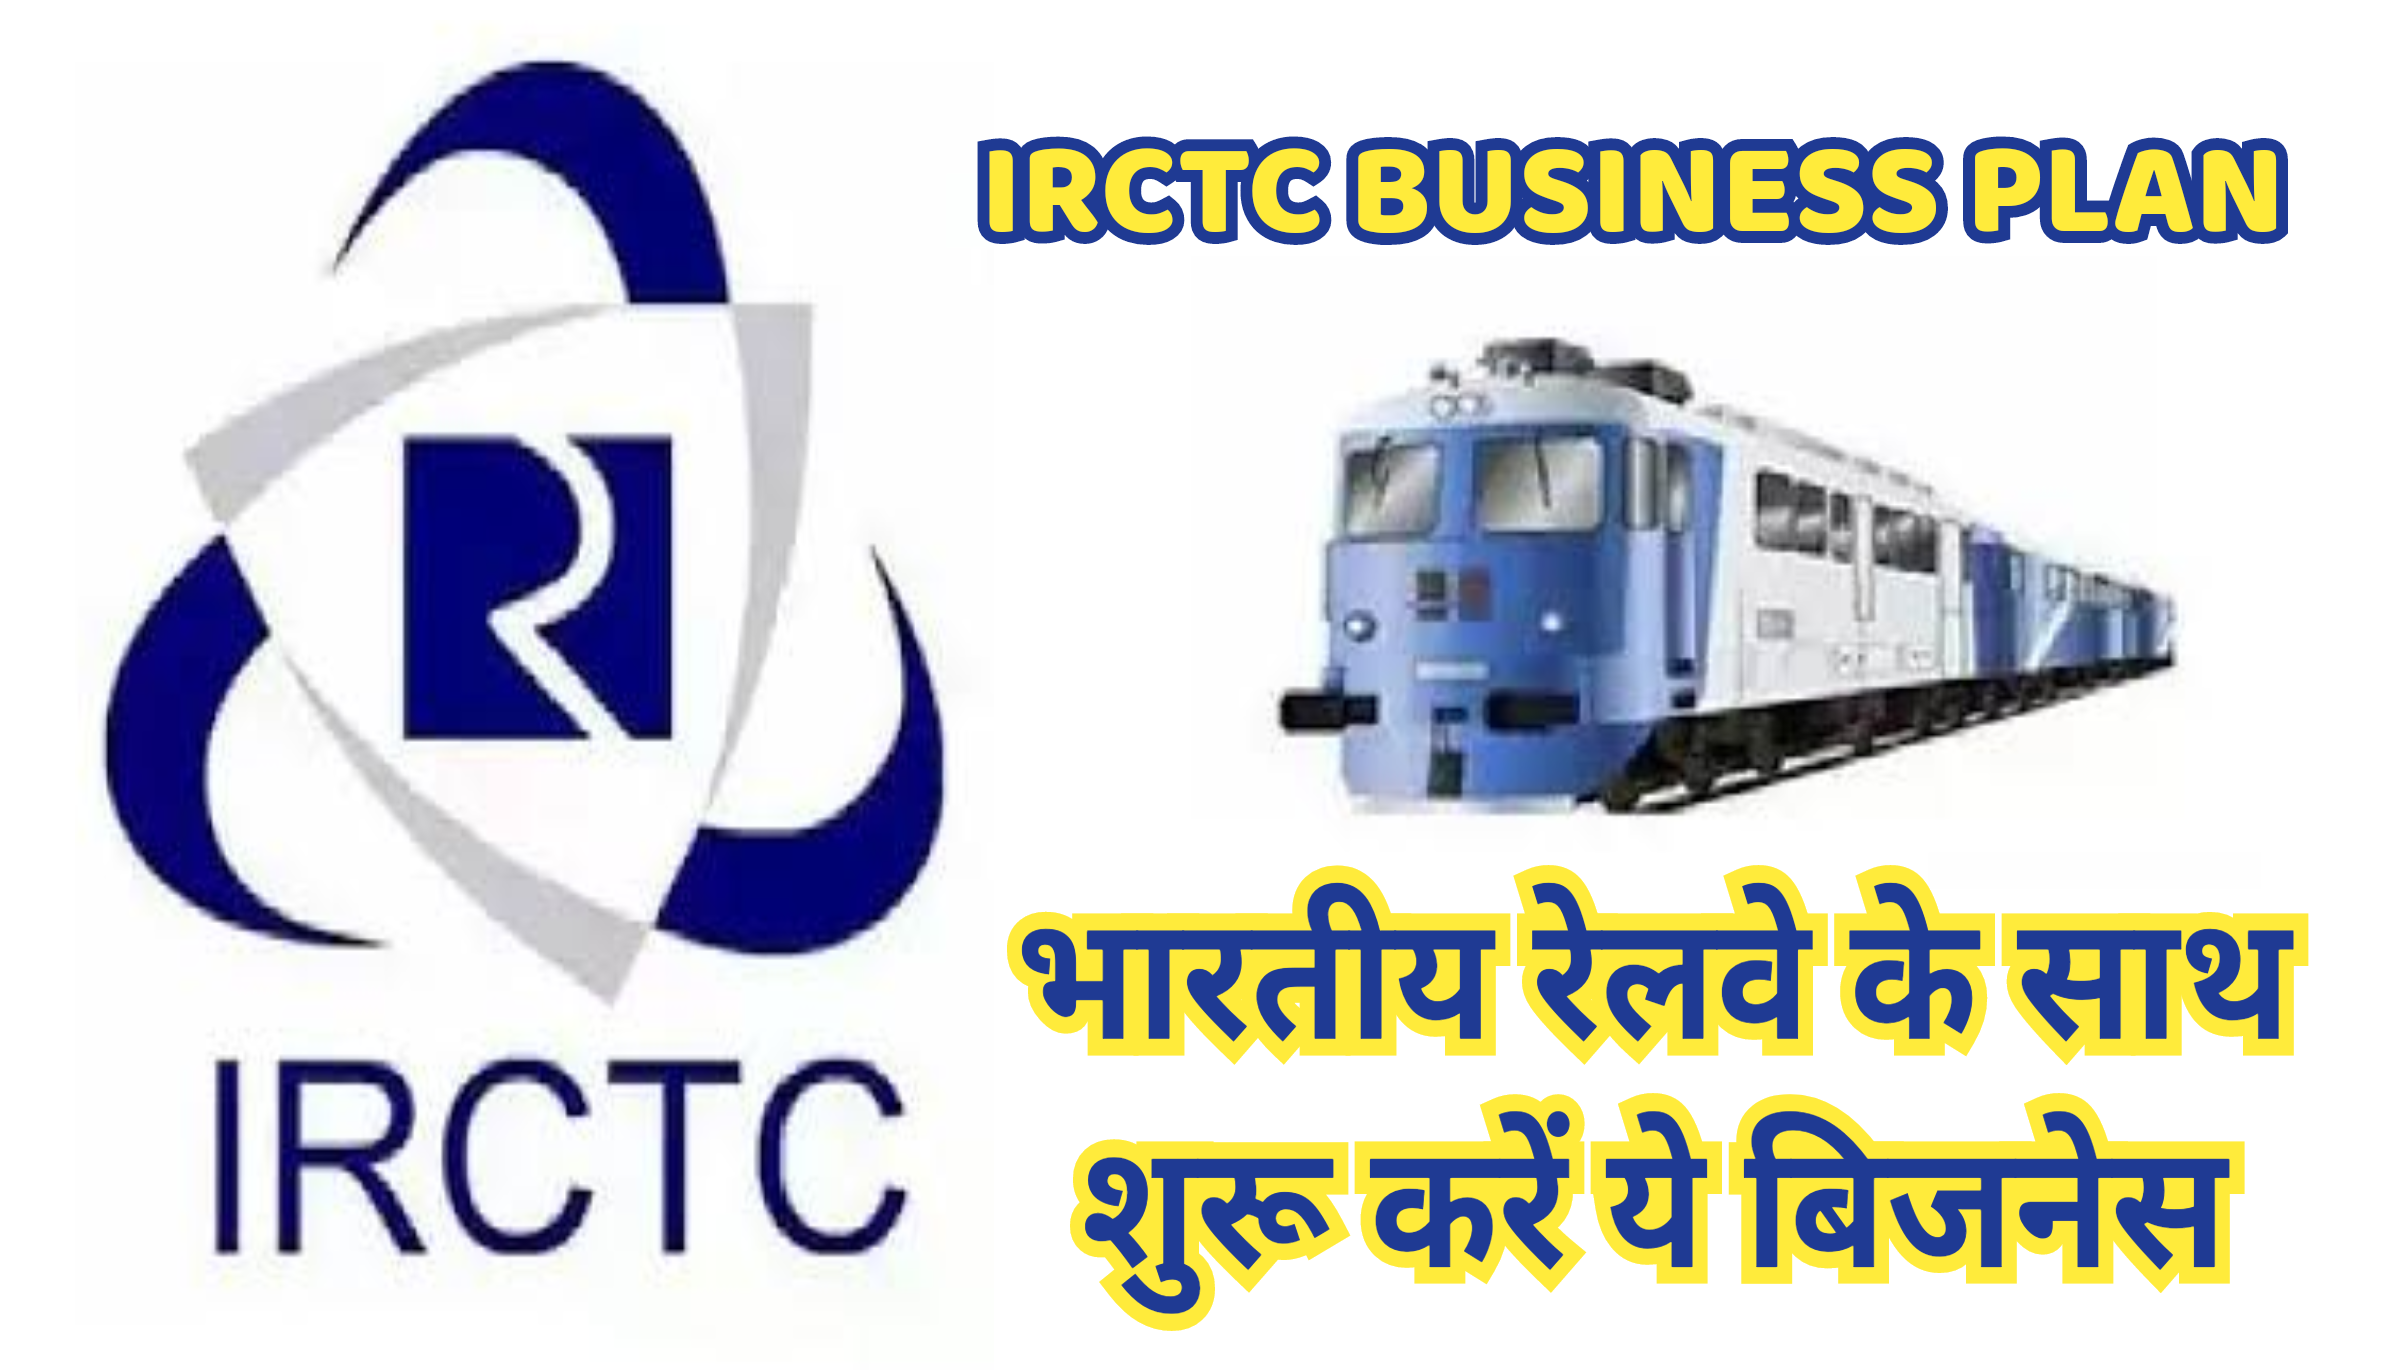 IRCTC Business Plan : भारतीय रेलवे के साथ शुरू करें ये बिजनेस